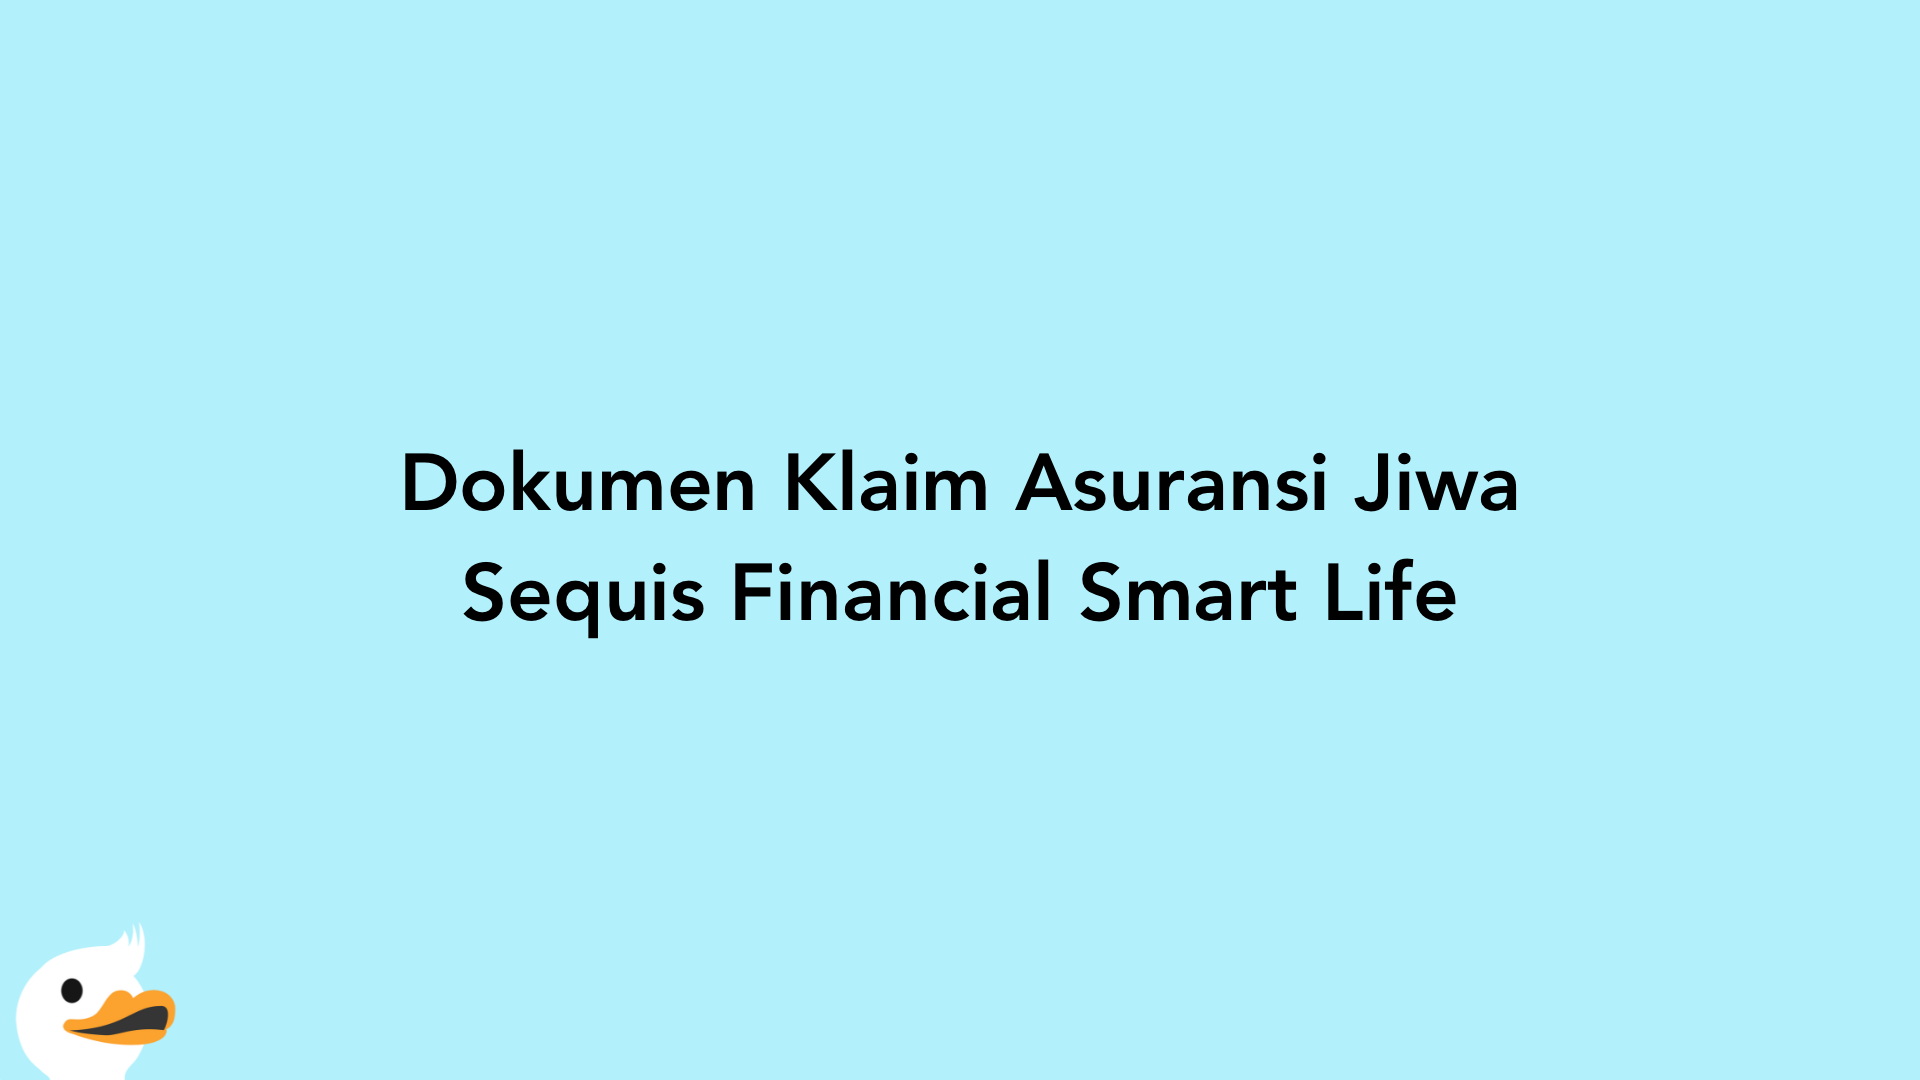 Dokumen Klaim Asuransi Jiwa Sequis Financial Smart Life